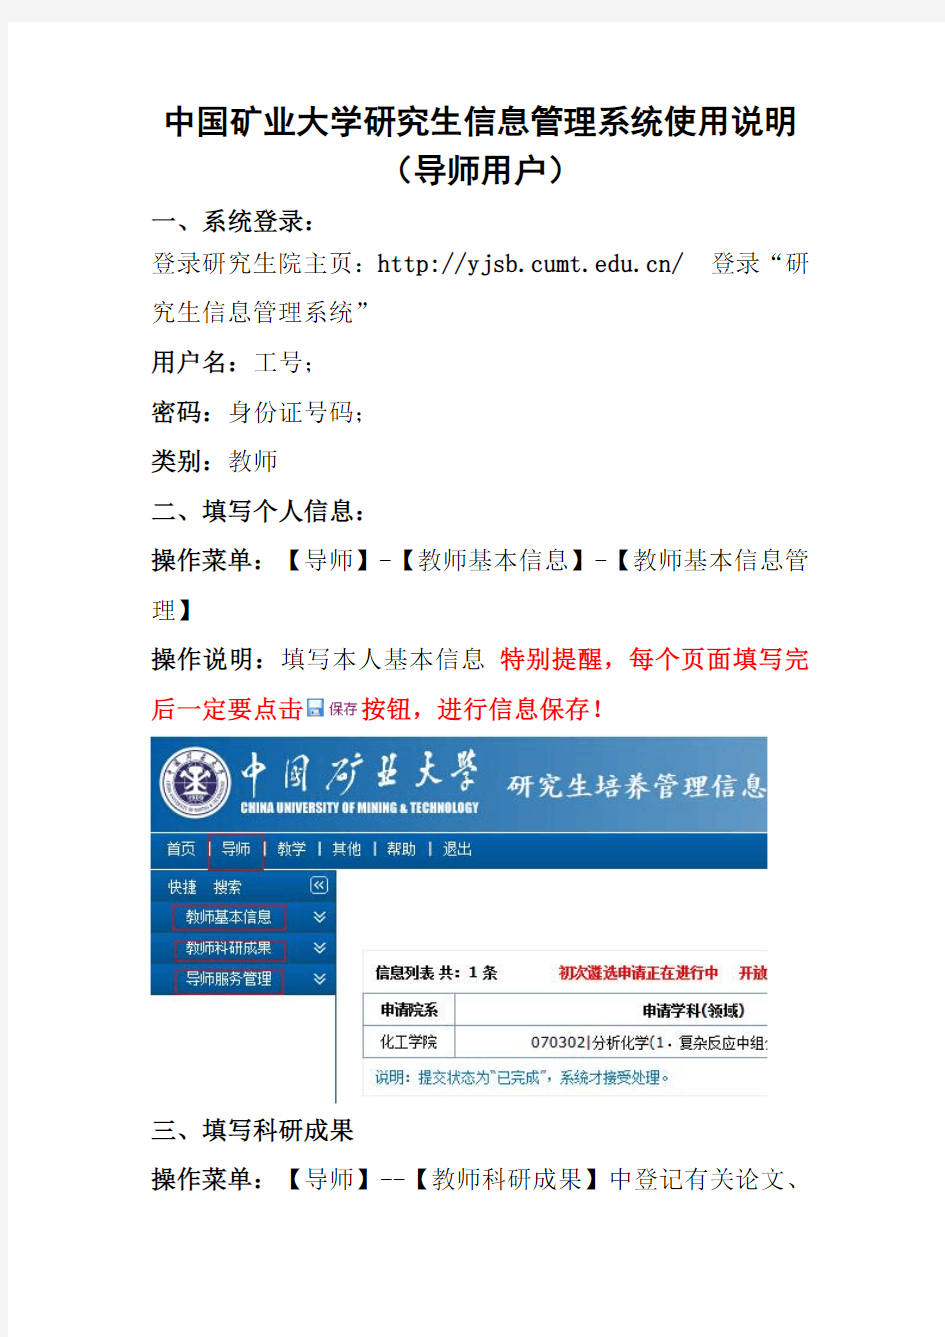 中国矿业大学研究生信息管理系统(导师部分)使用说明